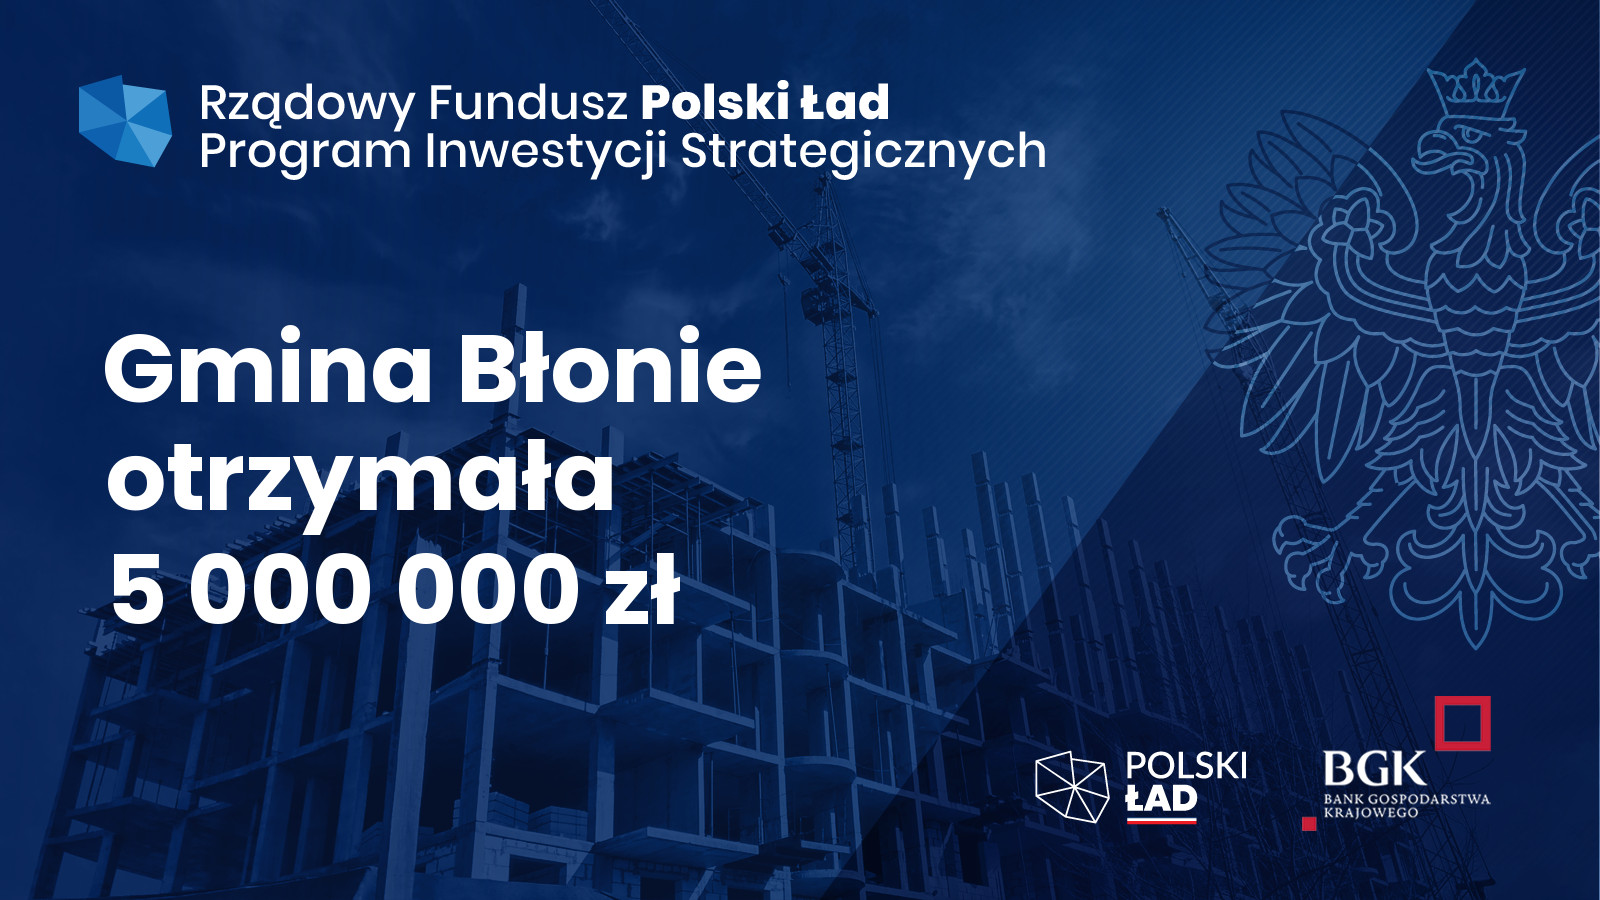 Informacja na granatowym tle biały napis Gmina Błonie otrzymała 5000000 zł, Rządowy Fundusz Polski Ład, Program Inwestycji Strategicznych